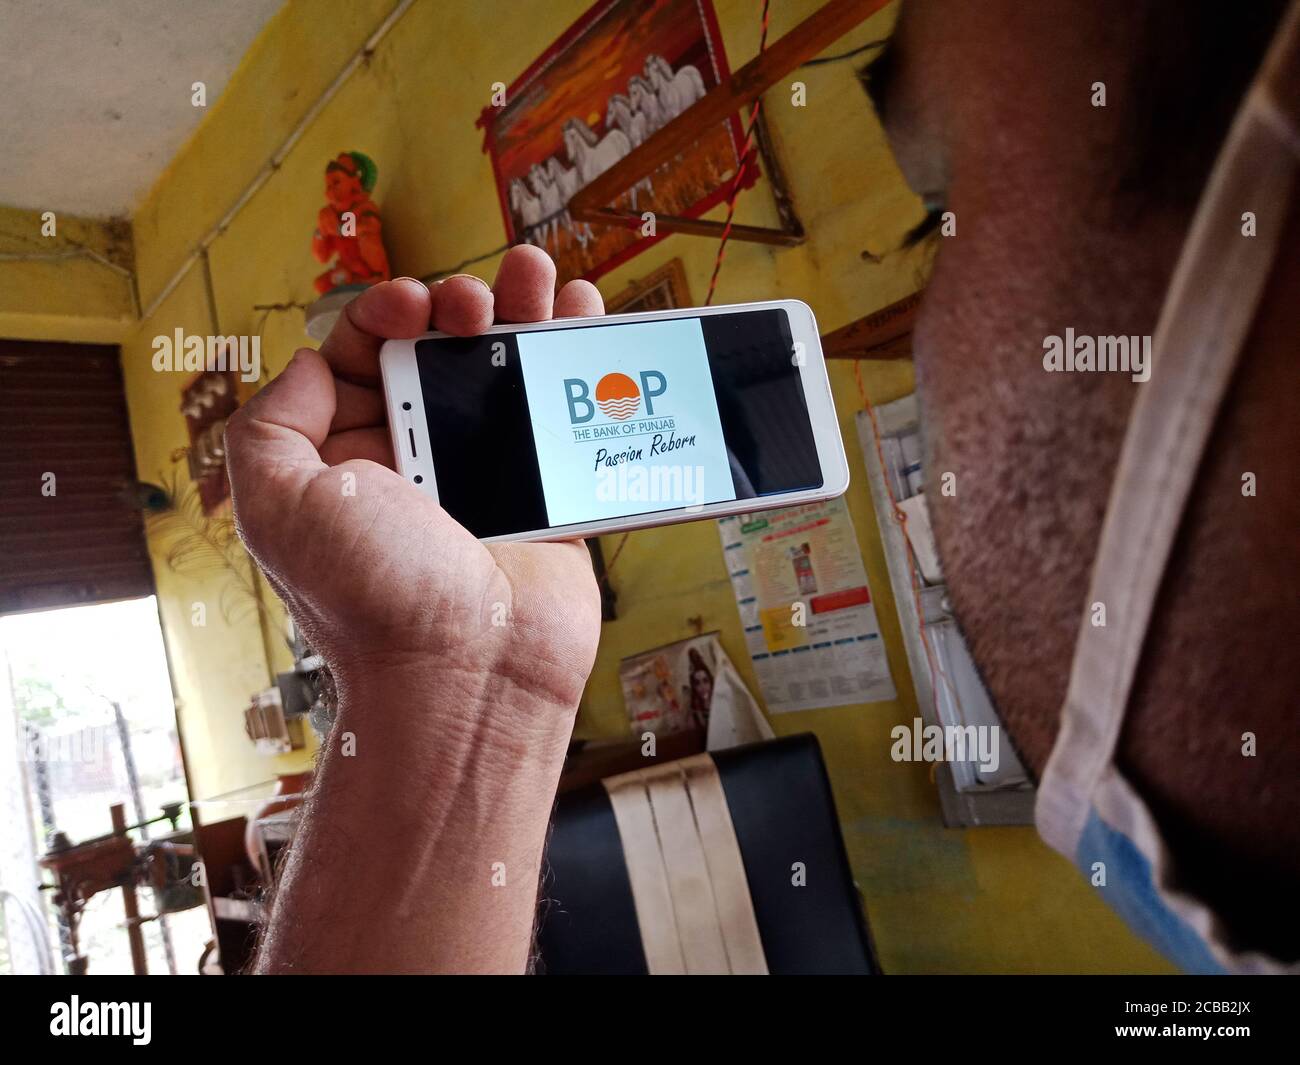 DISTRETTO KATNI, INDIA - 02 GIUGNO 2020: Un uomo indiano che detiene smartphone con la visualizzazione della banca del logo punjab sullo schermo, istruzione bancaria moderna c Foto Stock